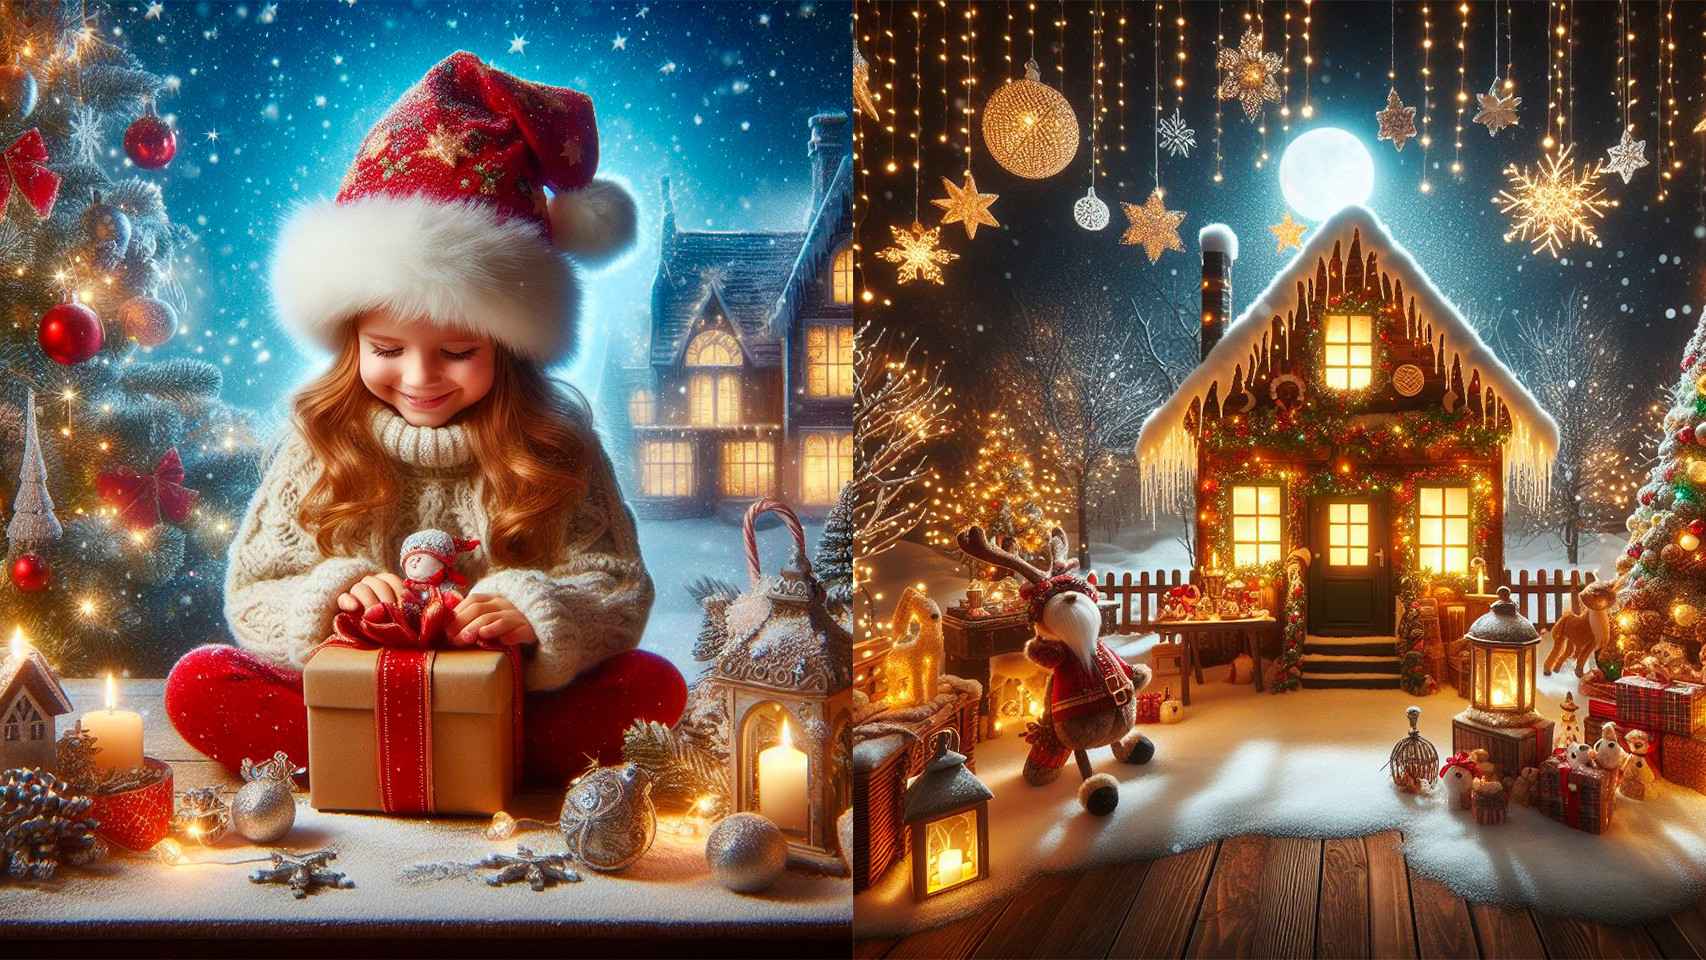 Imagen creada con el prompt: Una felicitación navideña lo más mágica posible